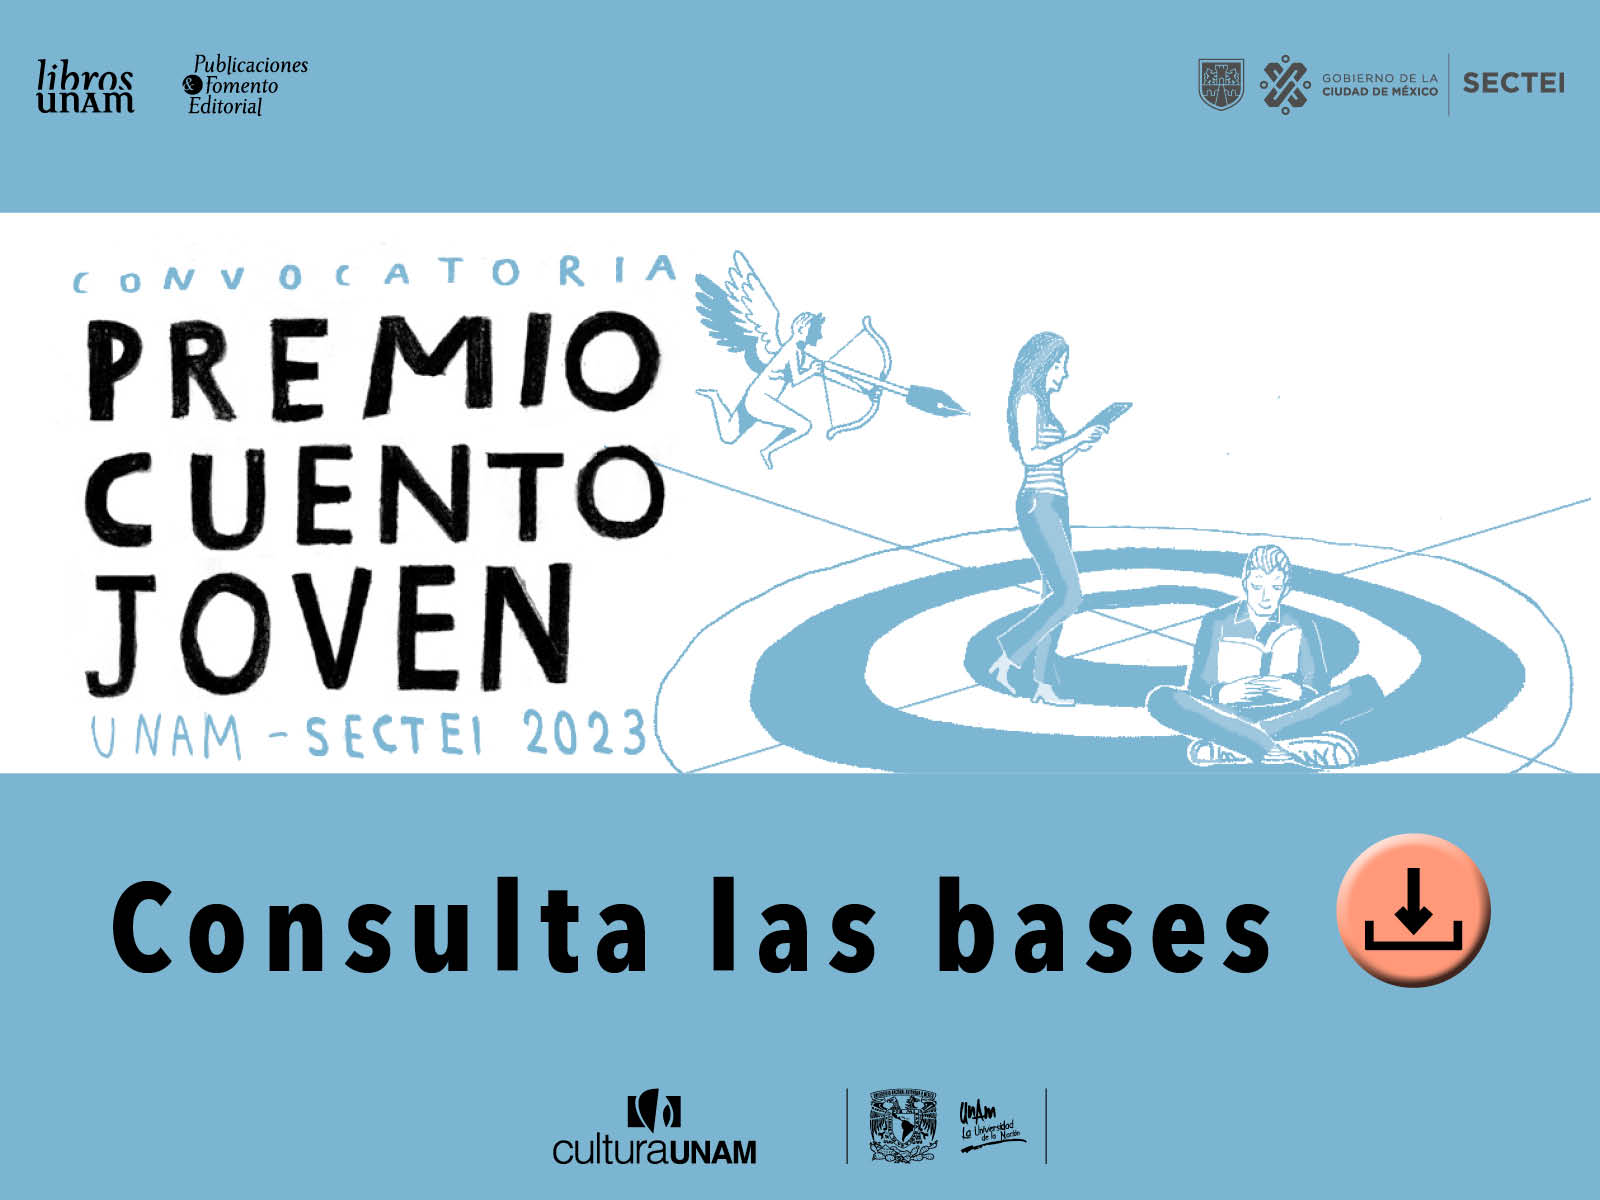 Convocatoria Premio Cuento Joven 2023 - Libros UNAM